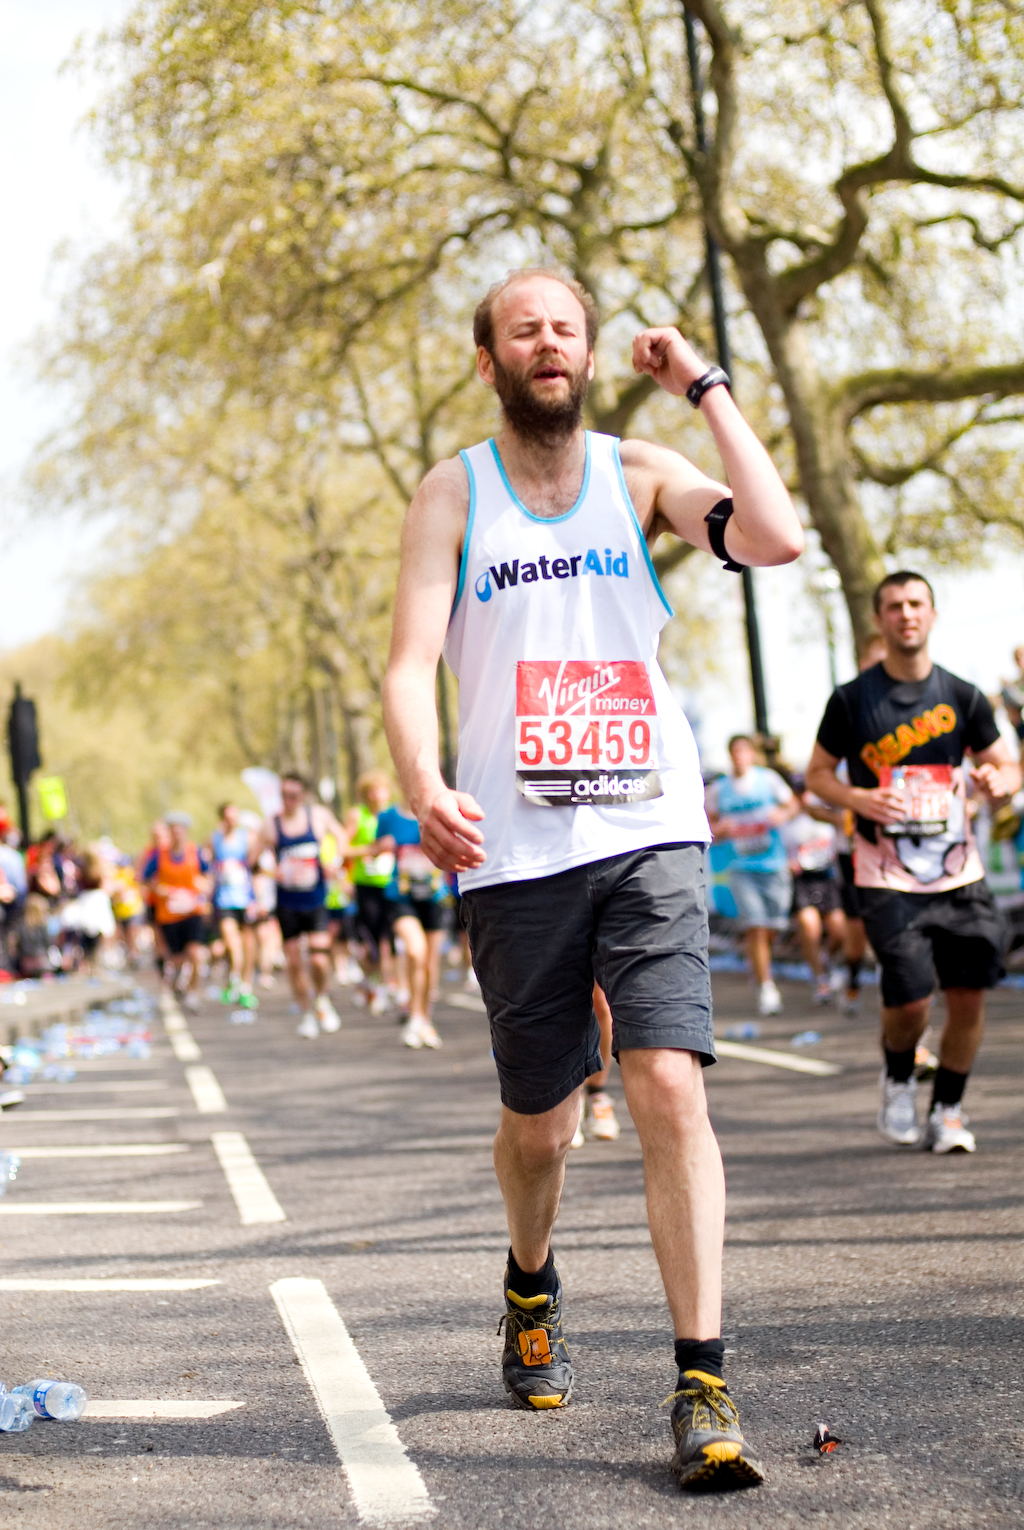  London Marathon 2011 - Mile 24.75 